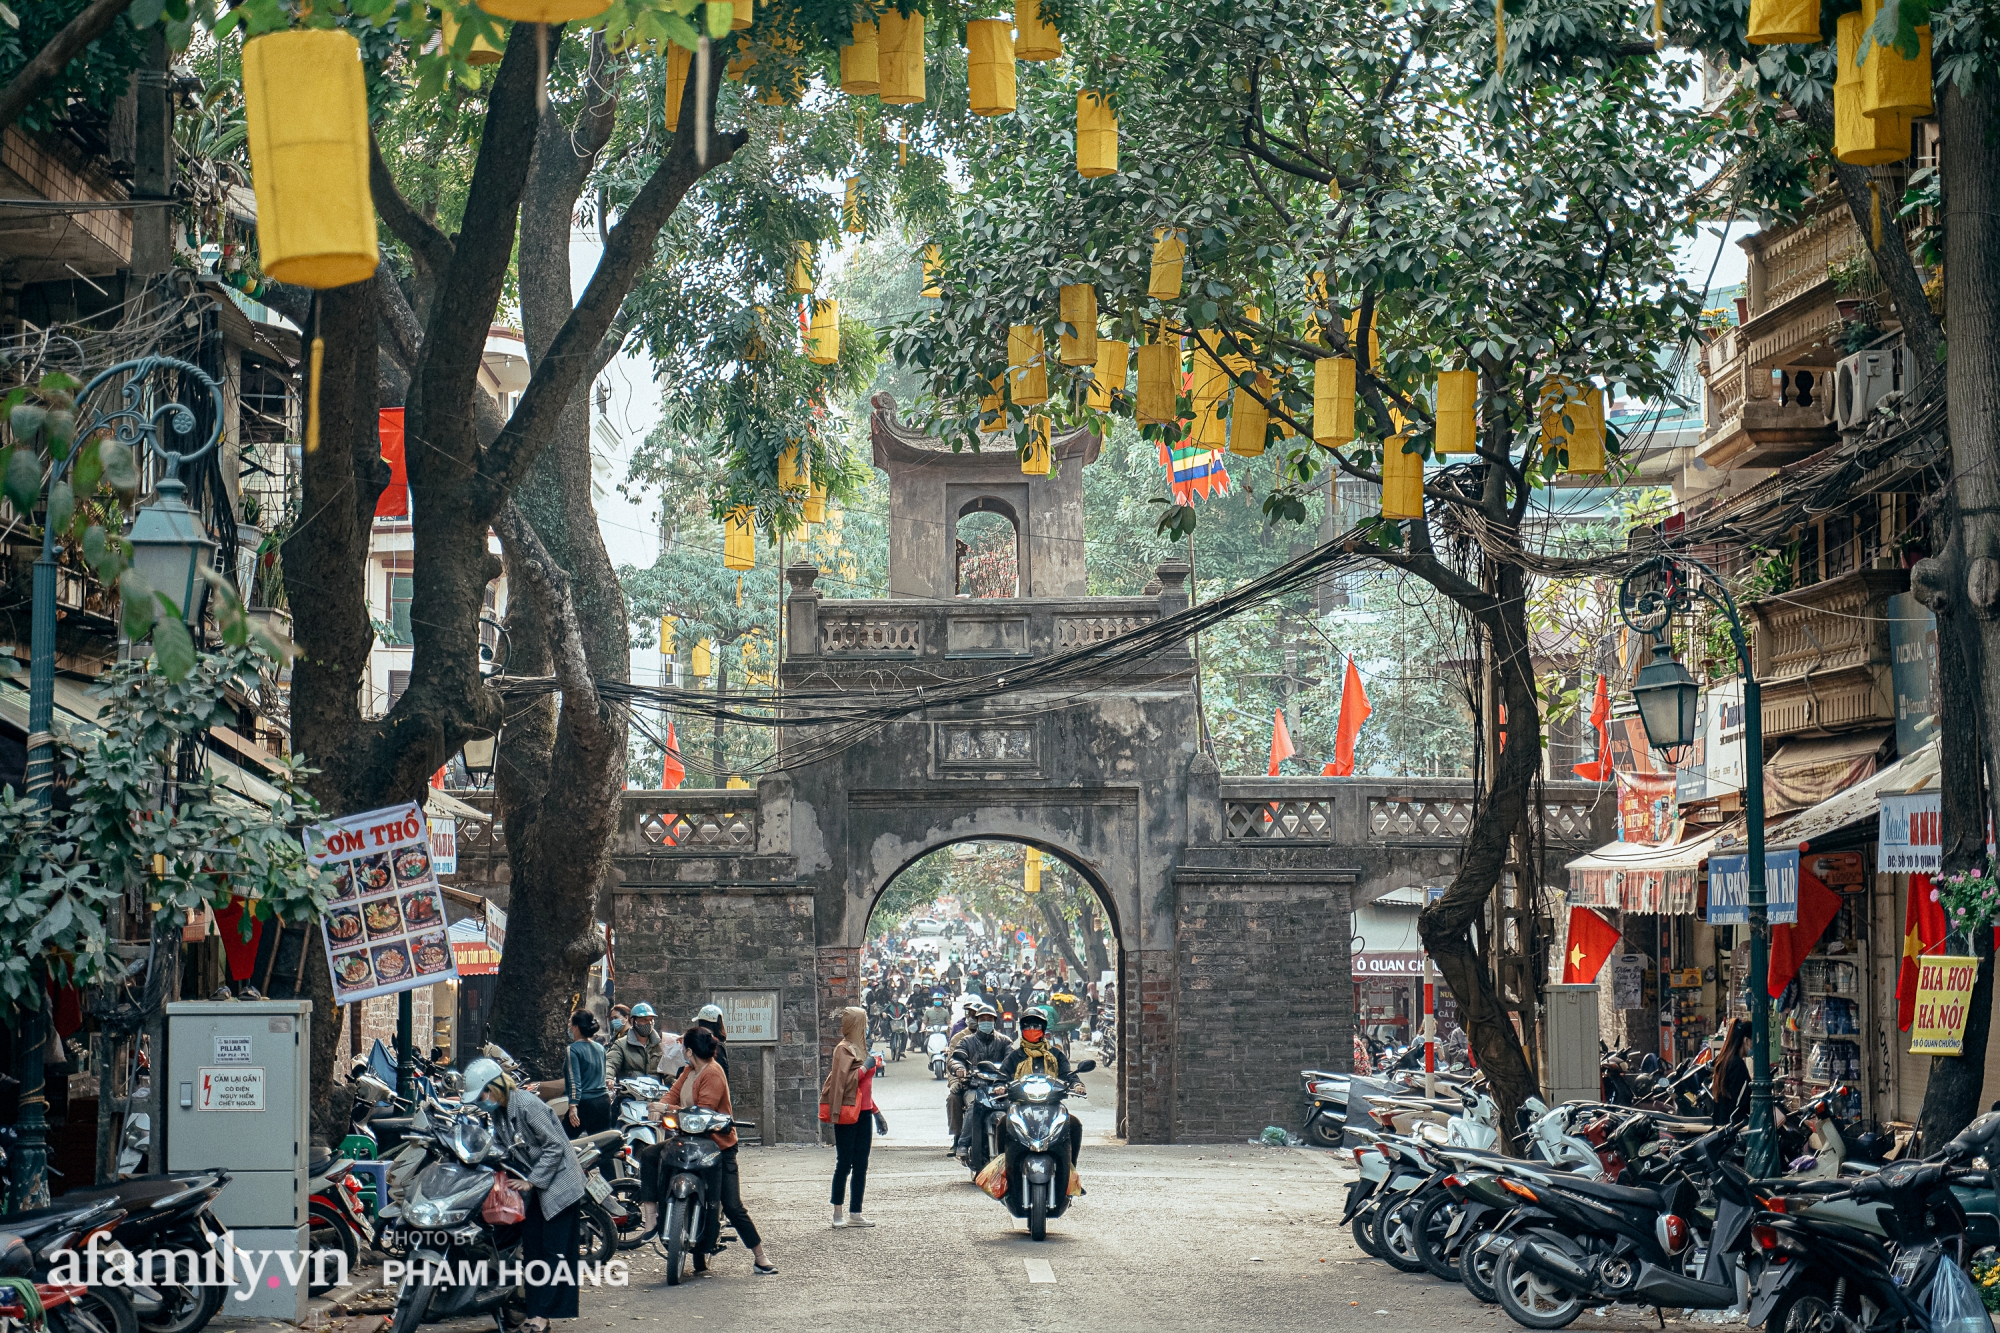 Ngày cuối năm bình yên trong ngõ chợ Thanh Hà - ngôi chợ lâu đời nhất phố cổ được giới nhà giàu chuộng mua vì toàn đồ chất lượng tươi ngon